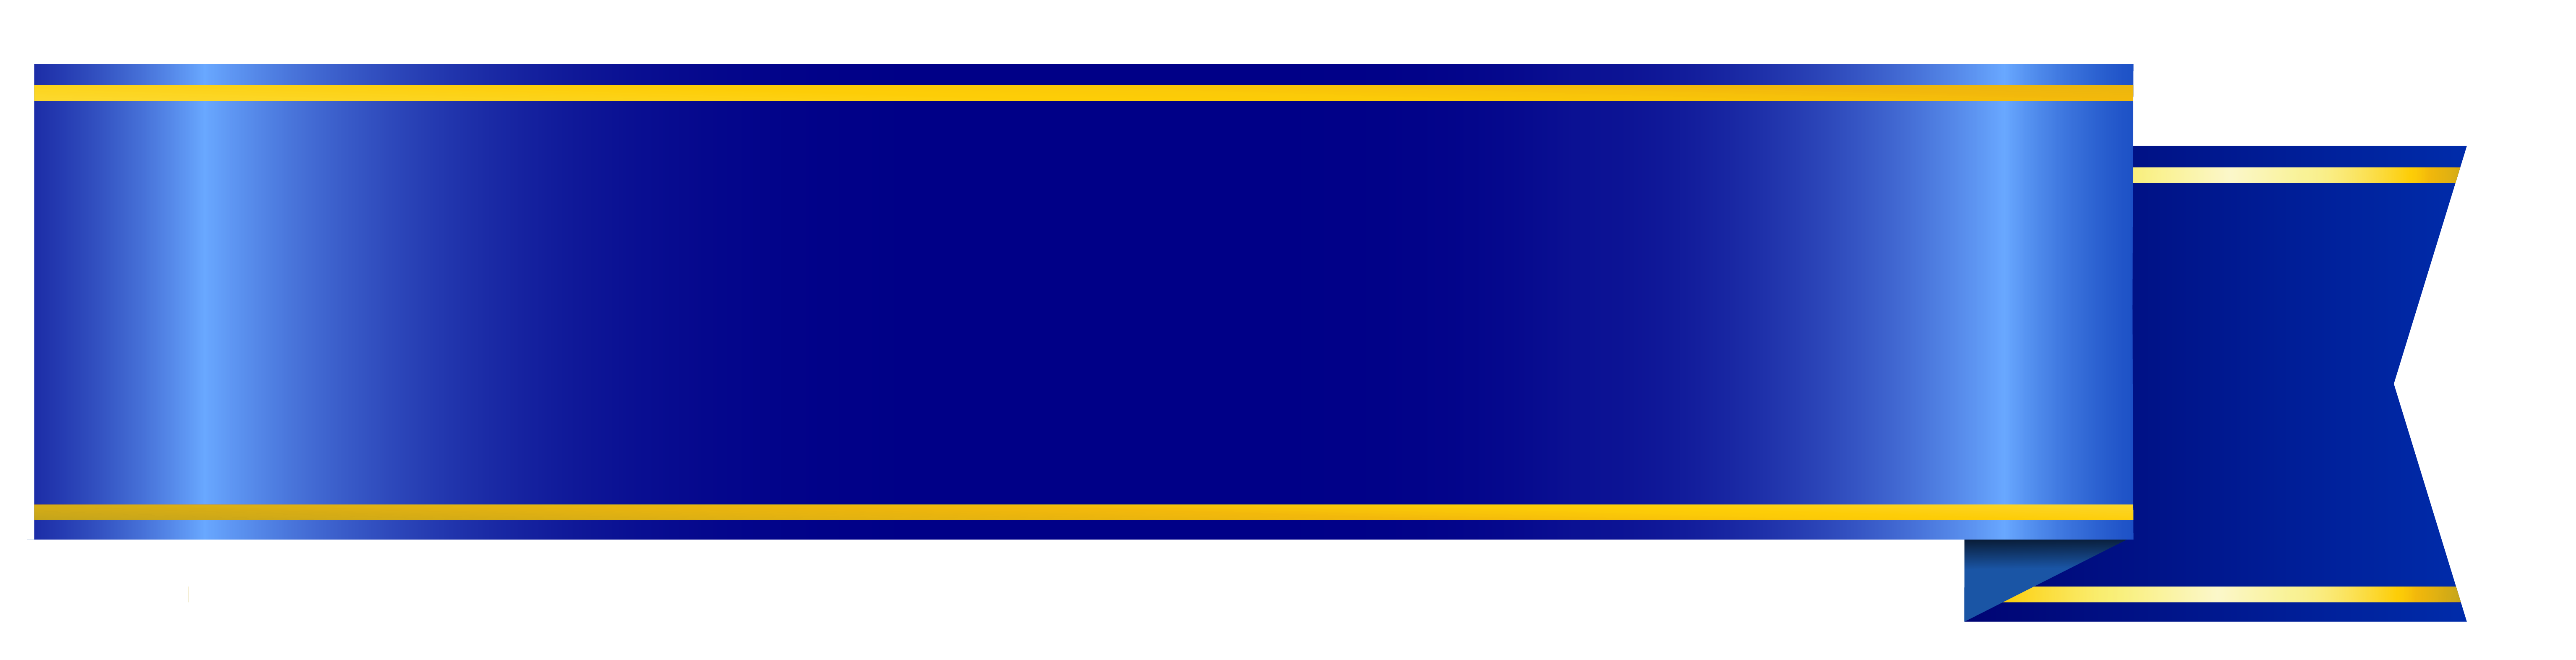 Blue Banner PNG Image Transparent